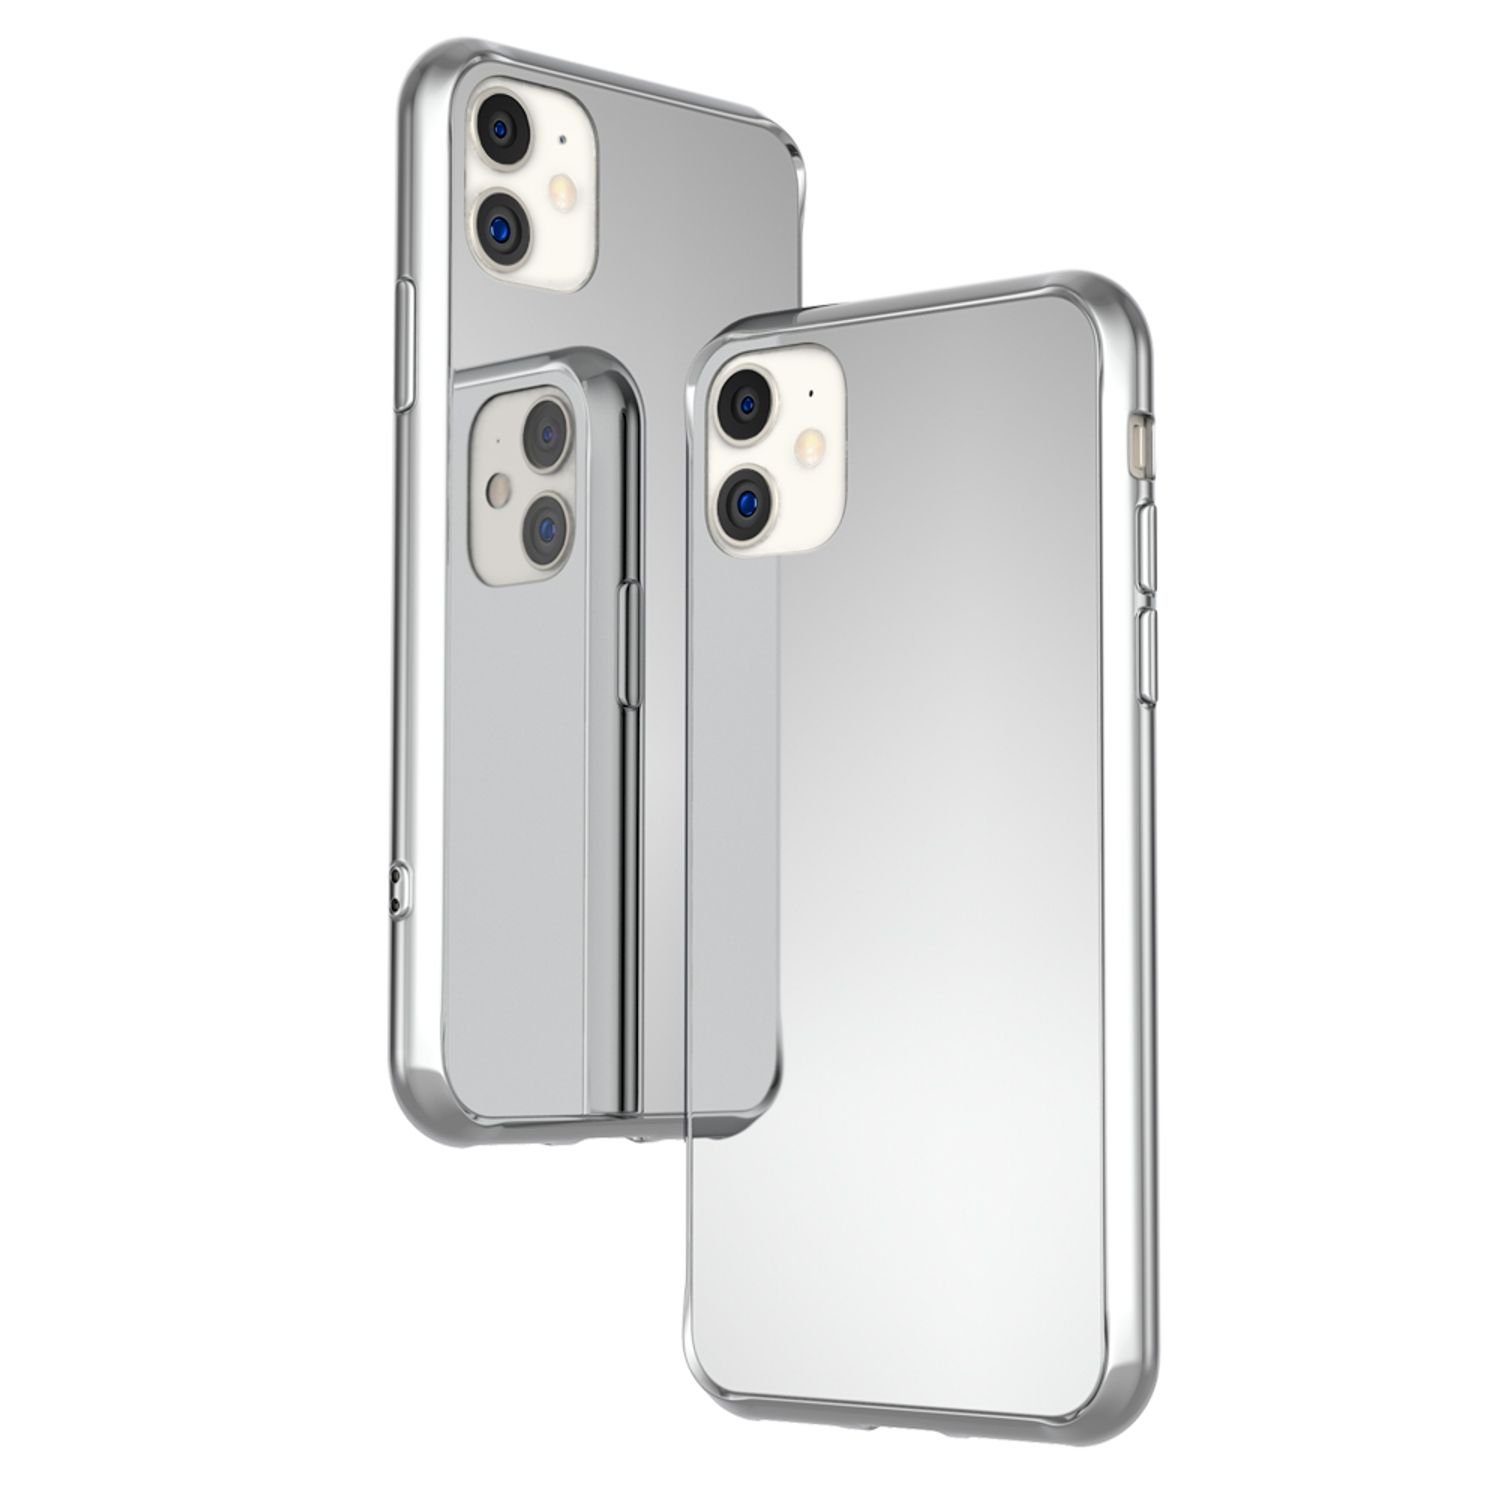 https://i.otto.de/i/otto/1fe0abb6-269d-5c9c-adf2-ea7391b85769/nalia-smartphone-huelle-apple-iphone-11-spiegel-hartglas-huelle-super-klarer-spiegeleffekt-harte-rueckseite-wie-ein-echter-spiegel-silikon-rahmen-kratzfest-mirror-case-tempered-glass-cover-bumper-flexibel-hardcase-schutzhuelle-etui-handy-tasche.jpg?$formatz$